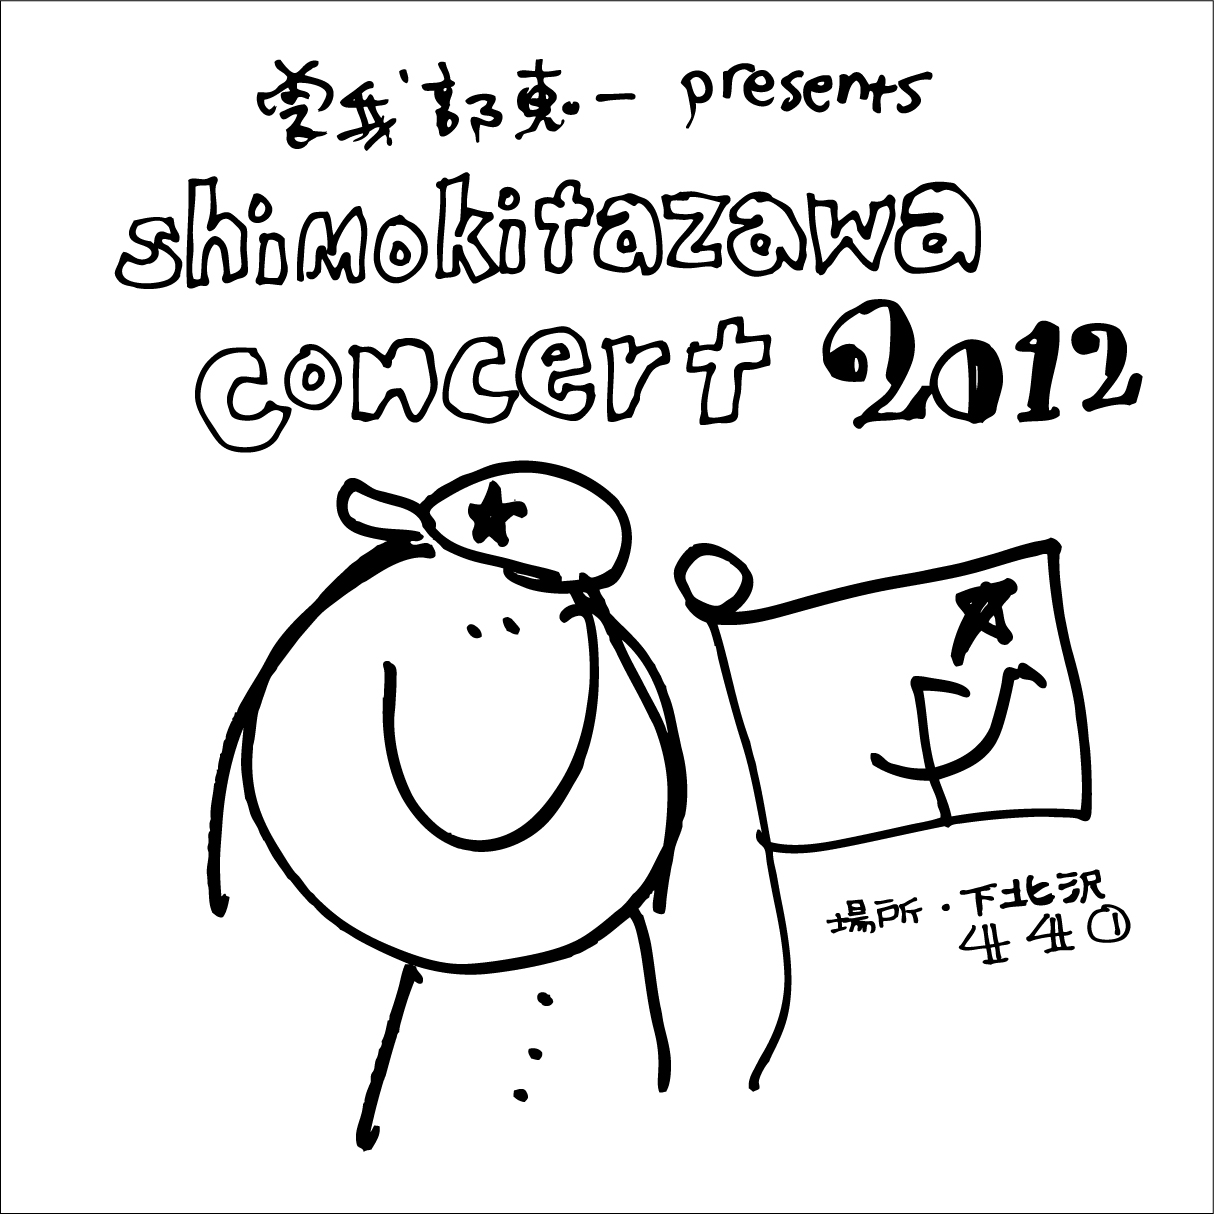 ＜曽我部恵一 presents "shimokitazawa concert"＞、11/15第二十三夜の出演者発表です。